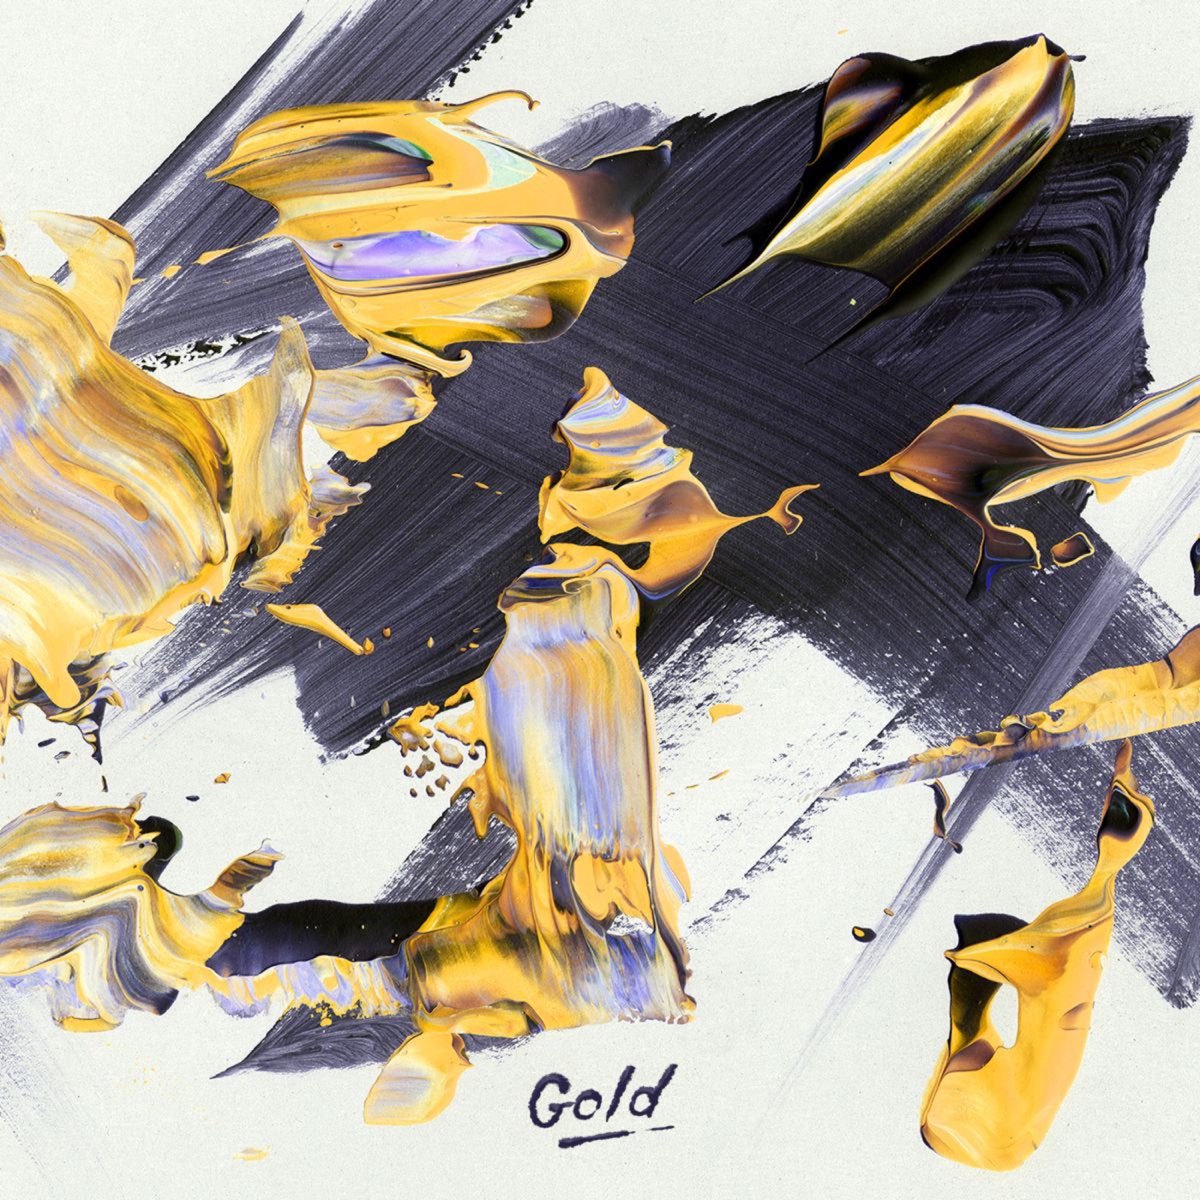 Gold Tolan Shaw обложка. Gold Tolan Shaw альбом. Золото обложка для трека. Обложка музыкального альбома с золотыми цветами.